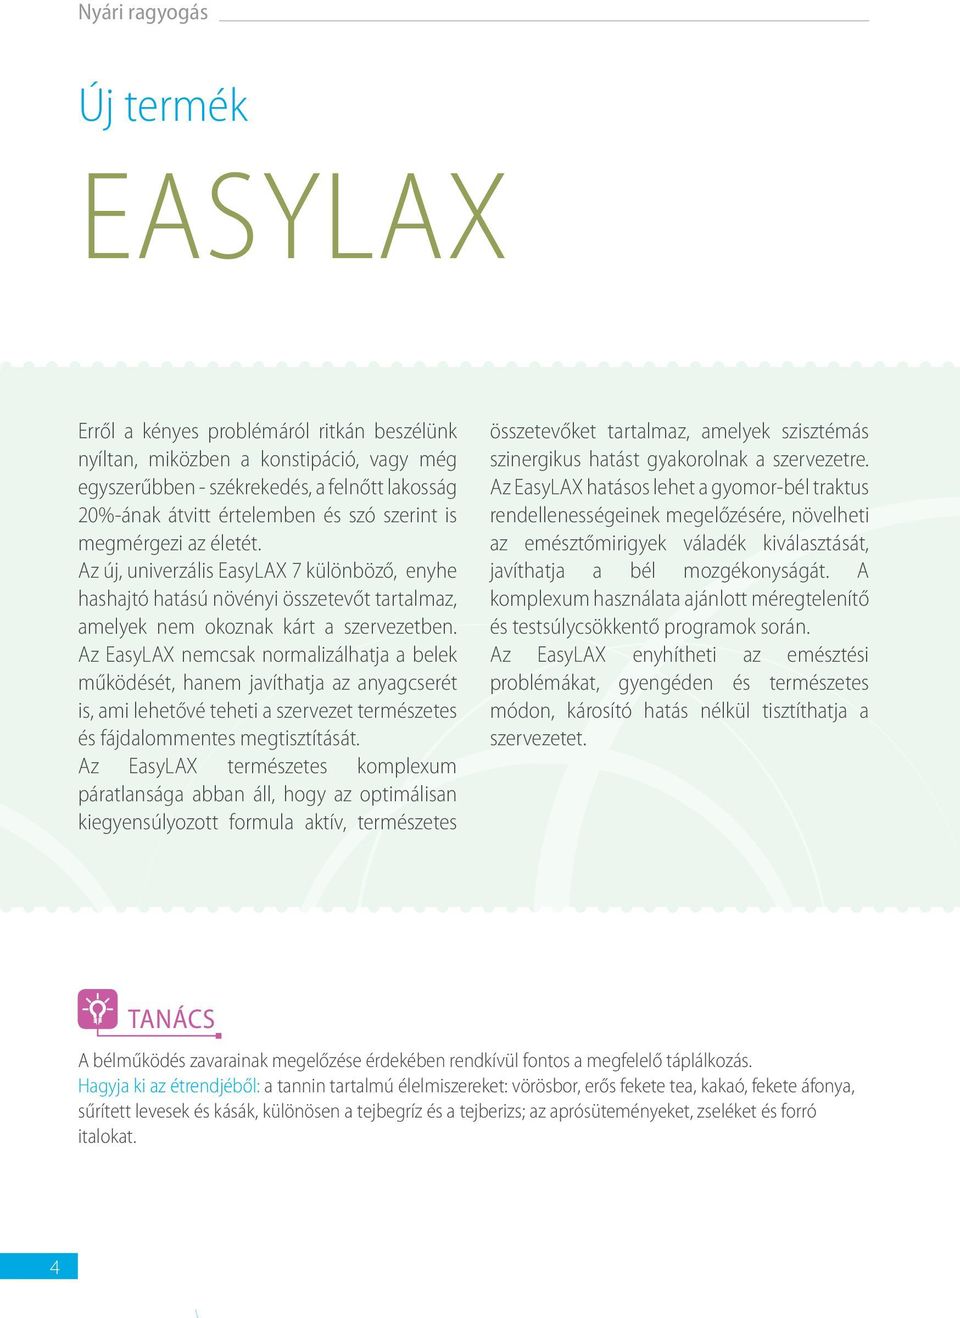 Az EasyLAX nemcsak normalizálhatja a belek működését, hanem javíthatja az anyagcserét is, ami lehetővé teheti a szervezet természetes és fájdalommentes megtisztítását.